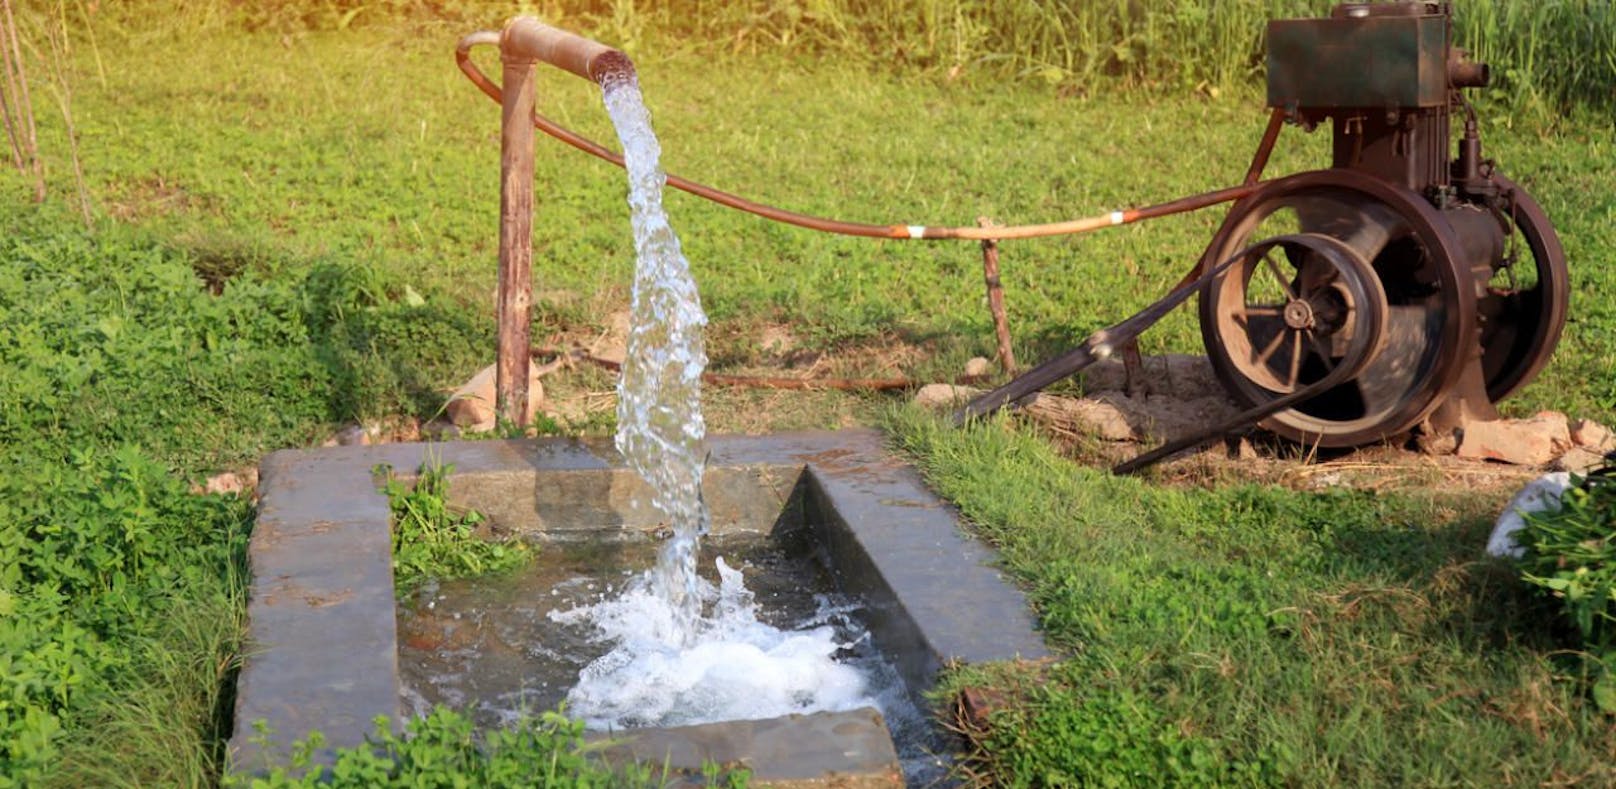 Trinkwasser könnte empfindlich teurer werden